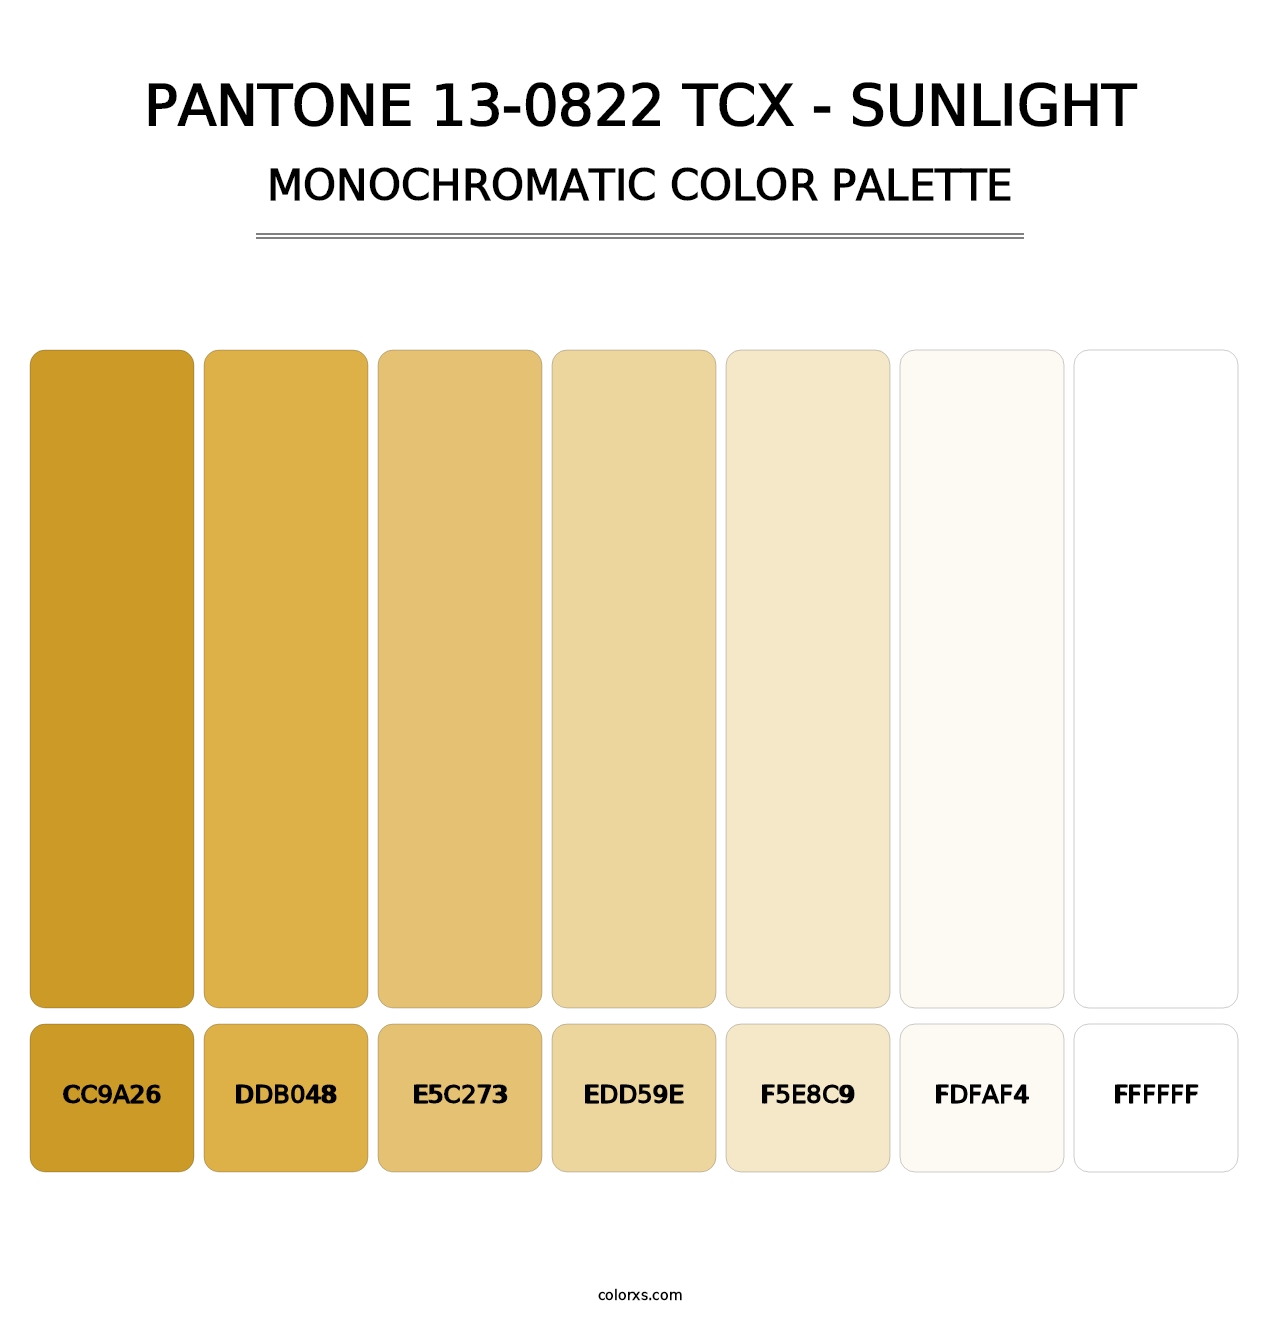 PANTONE 13-0822 TCX - Sunlight - Monochromatic Color Palette